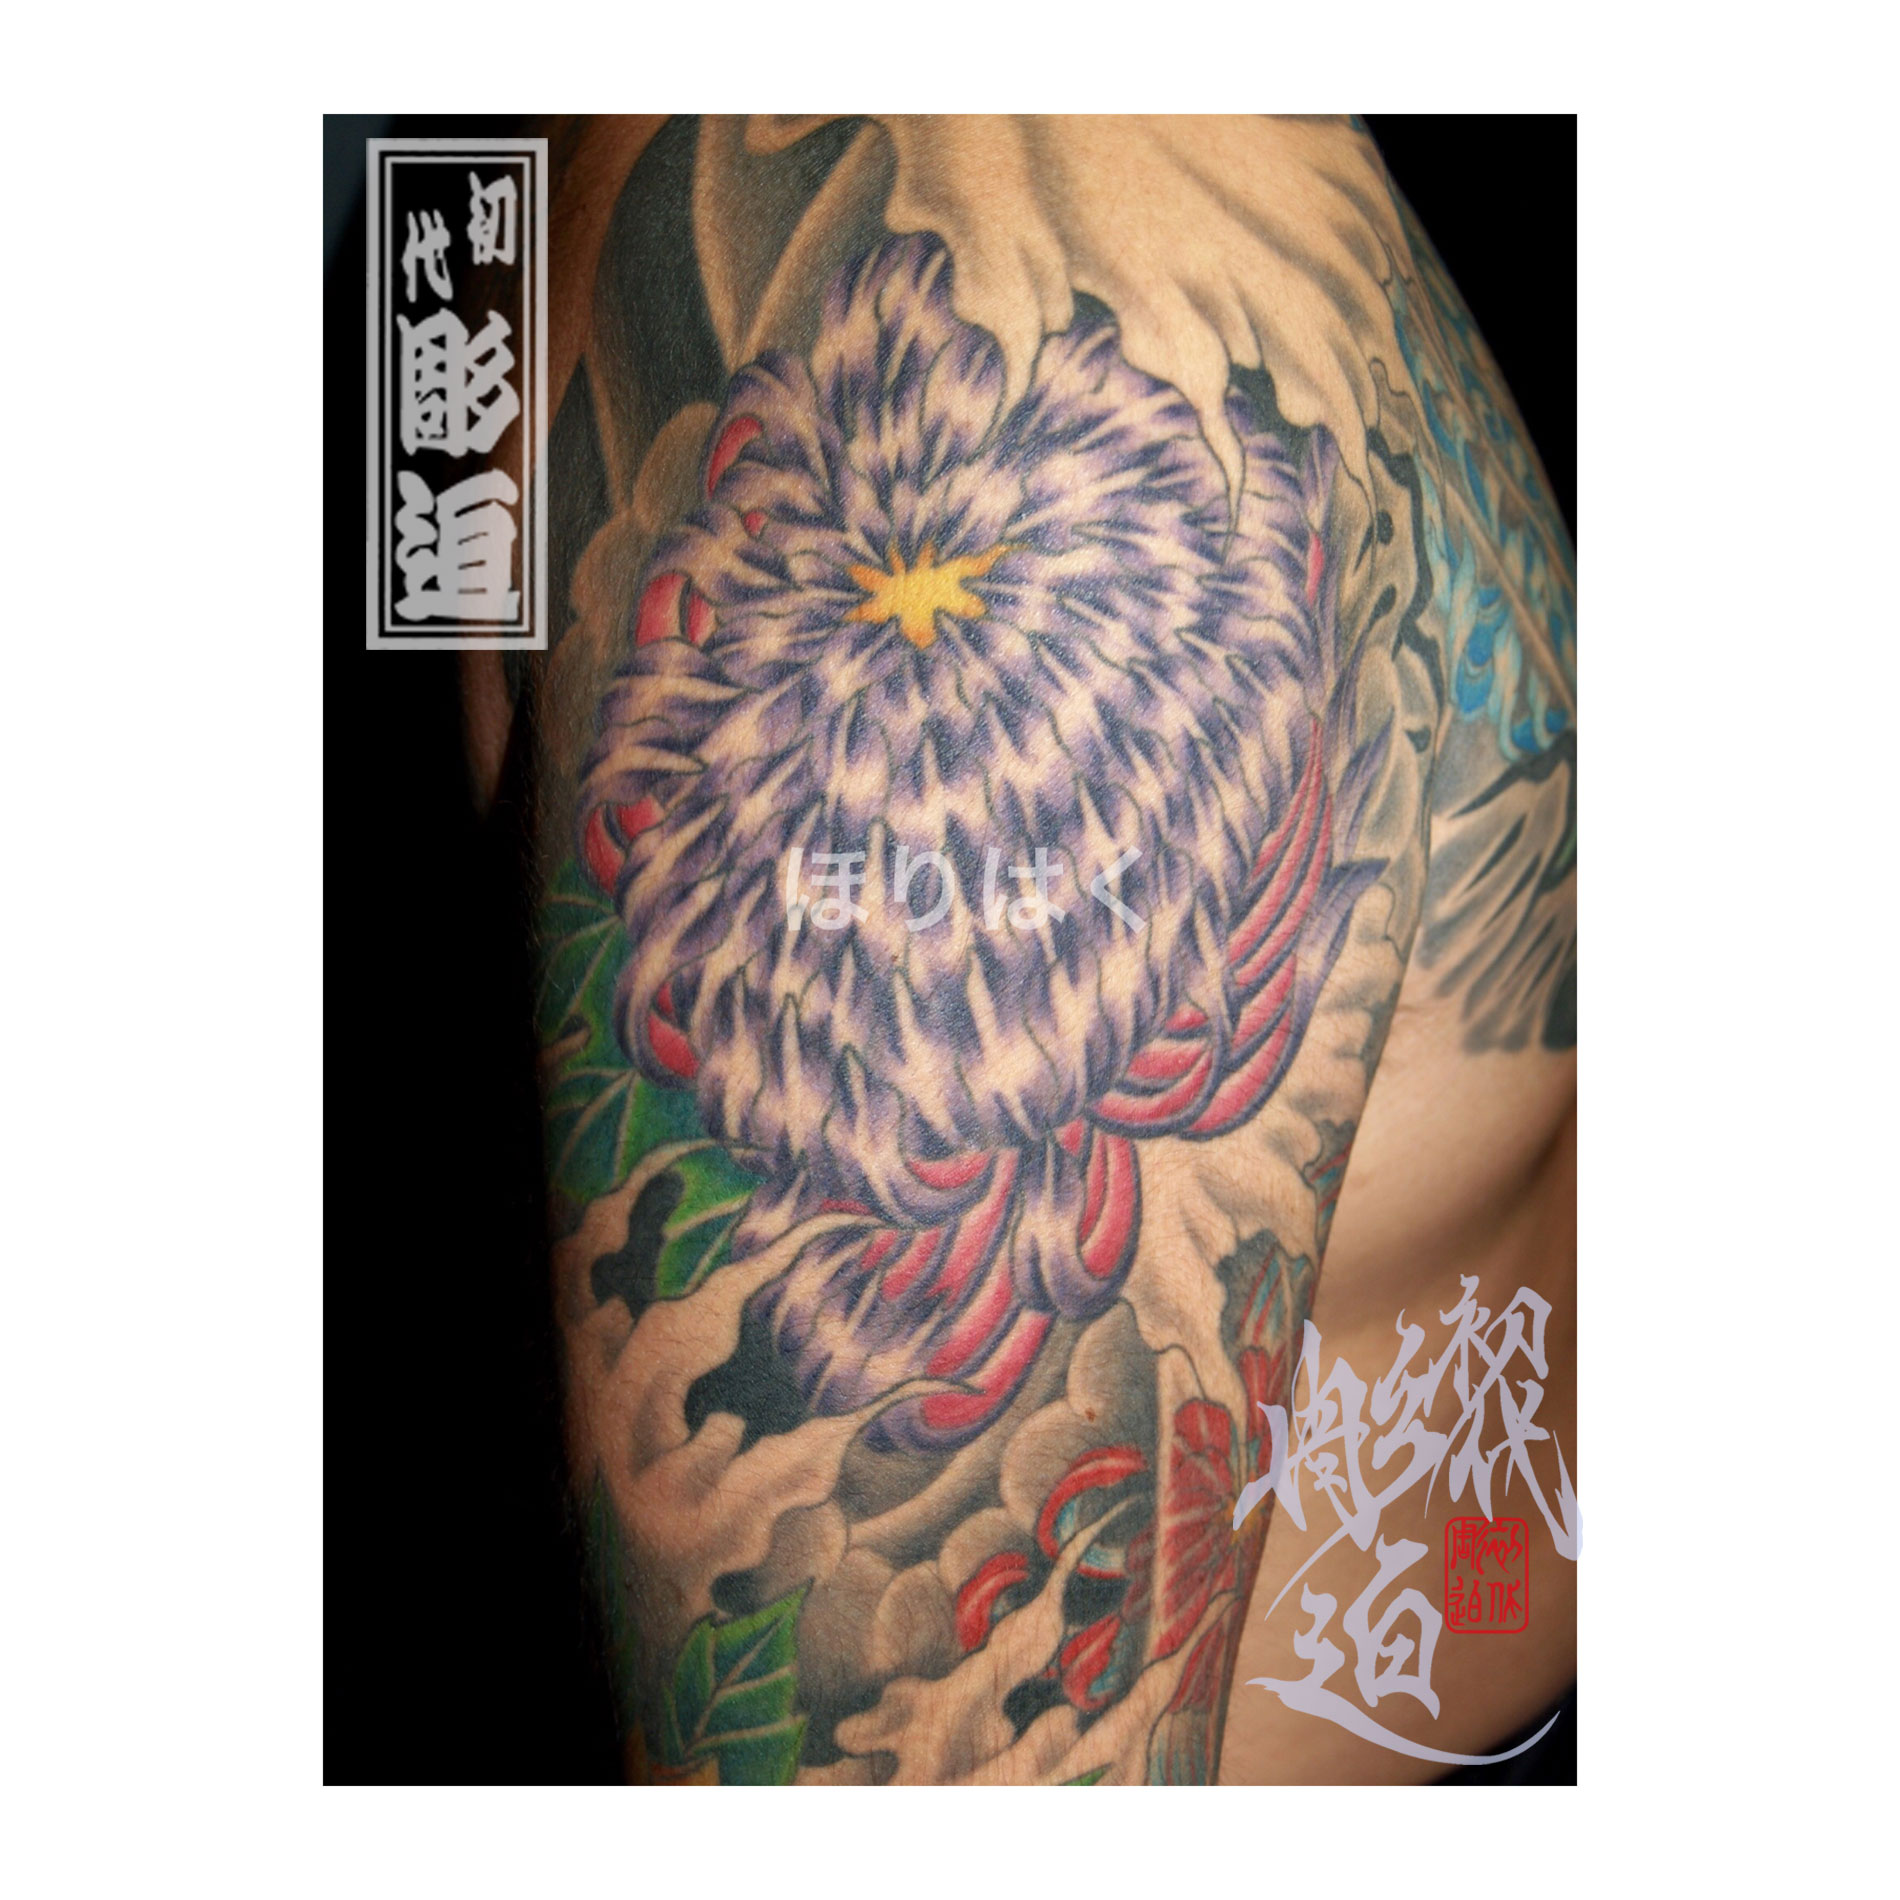 菊の刺青 菊水散らし 数珠に縁起札 キクスイチラシ ジュズにエンギフダ 和彫り 刺青 タトゥーデザイン